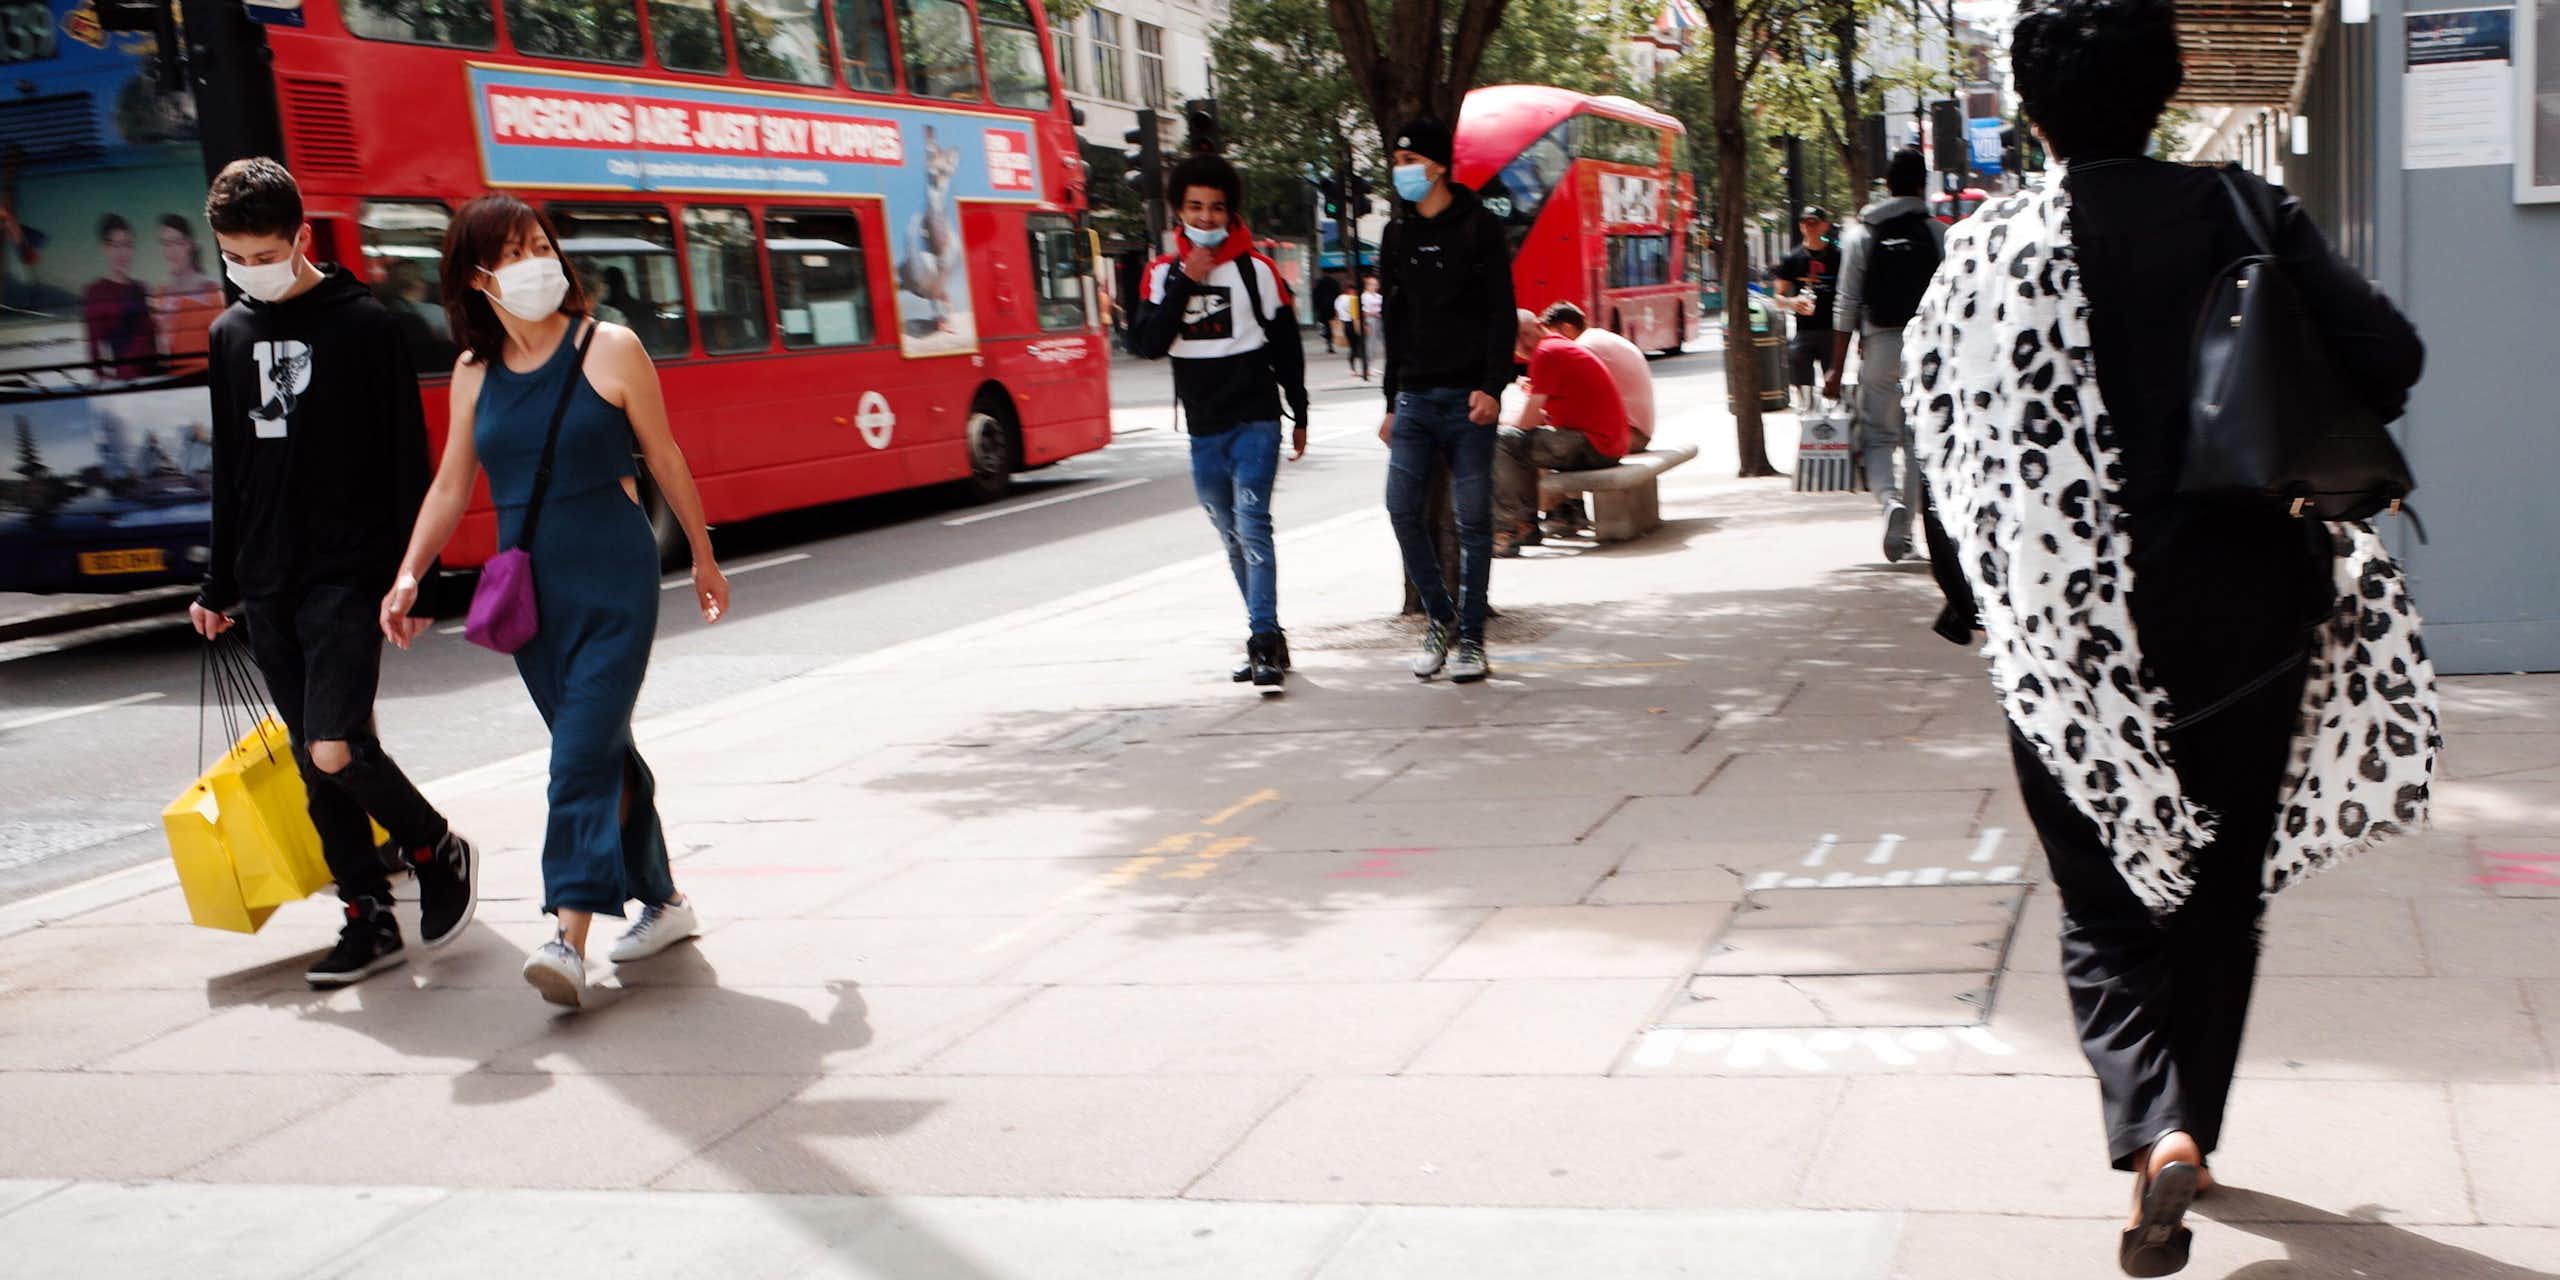 People walk on a shopping street in London.